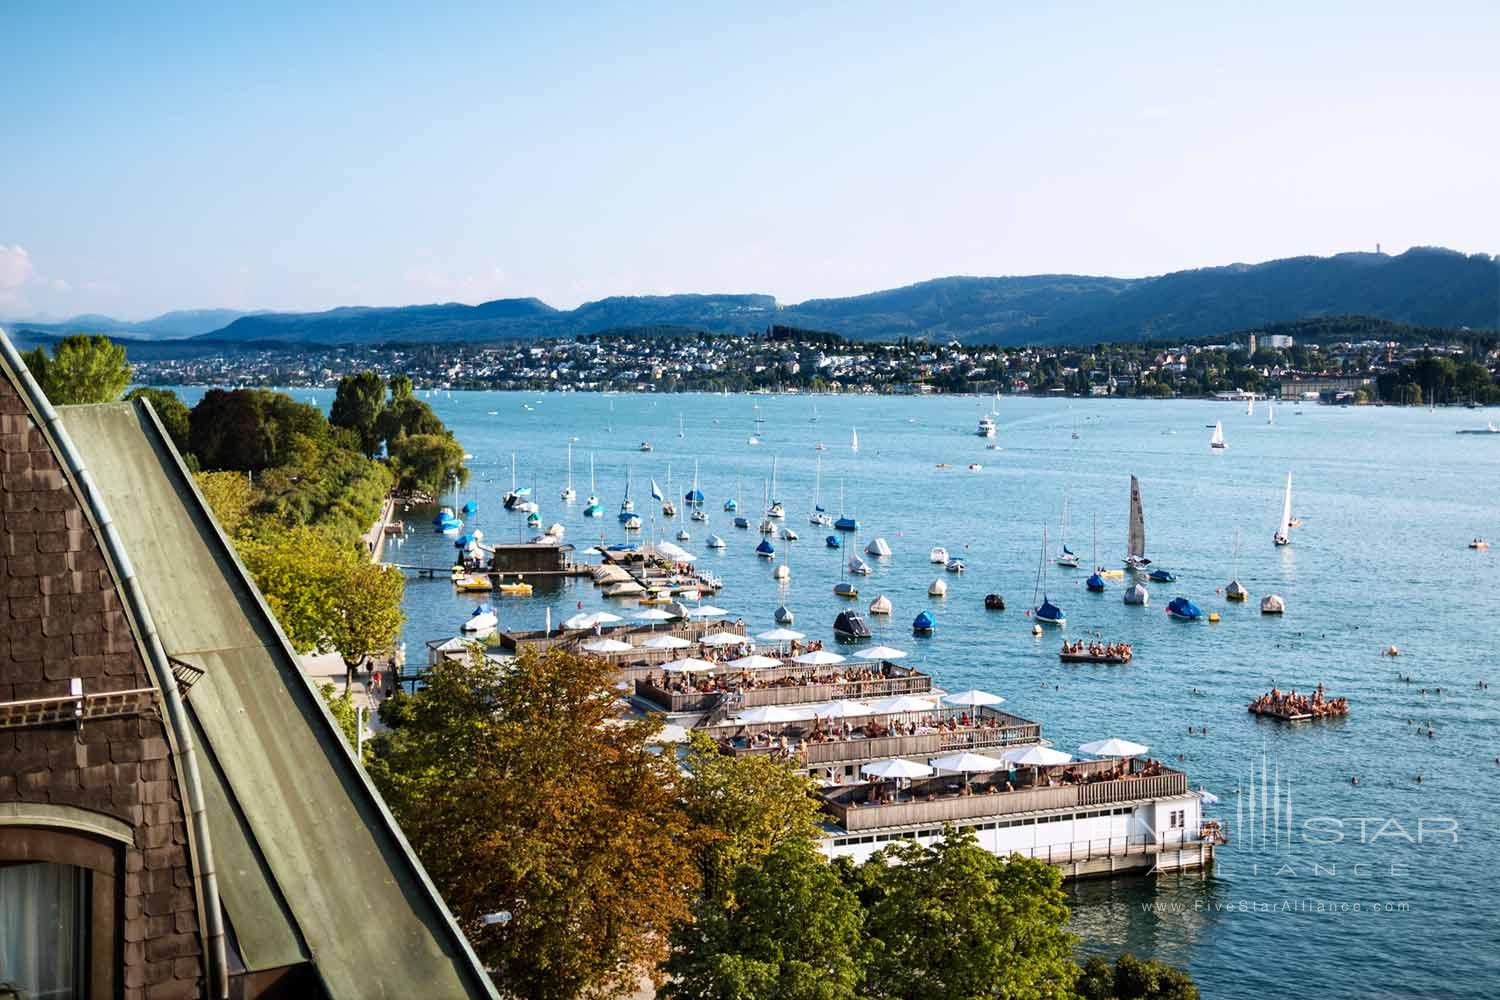 Hotel Views at La Reserve Eden au Lac Zurich, Zurich, Switzerland